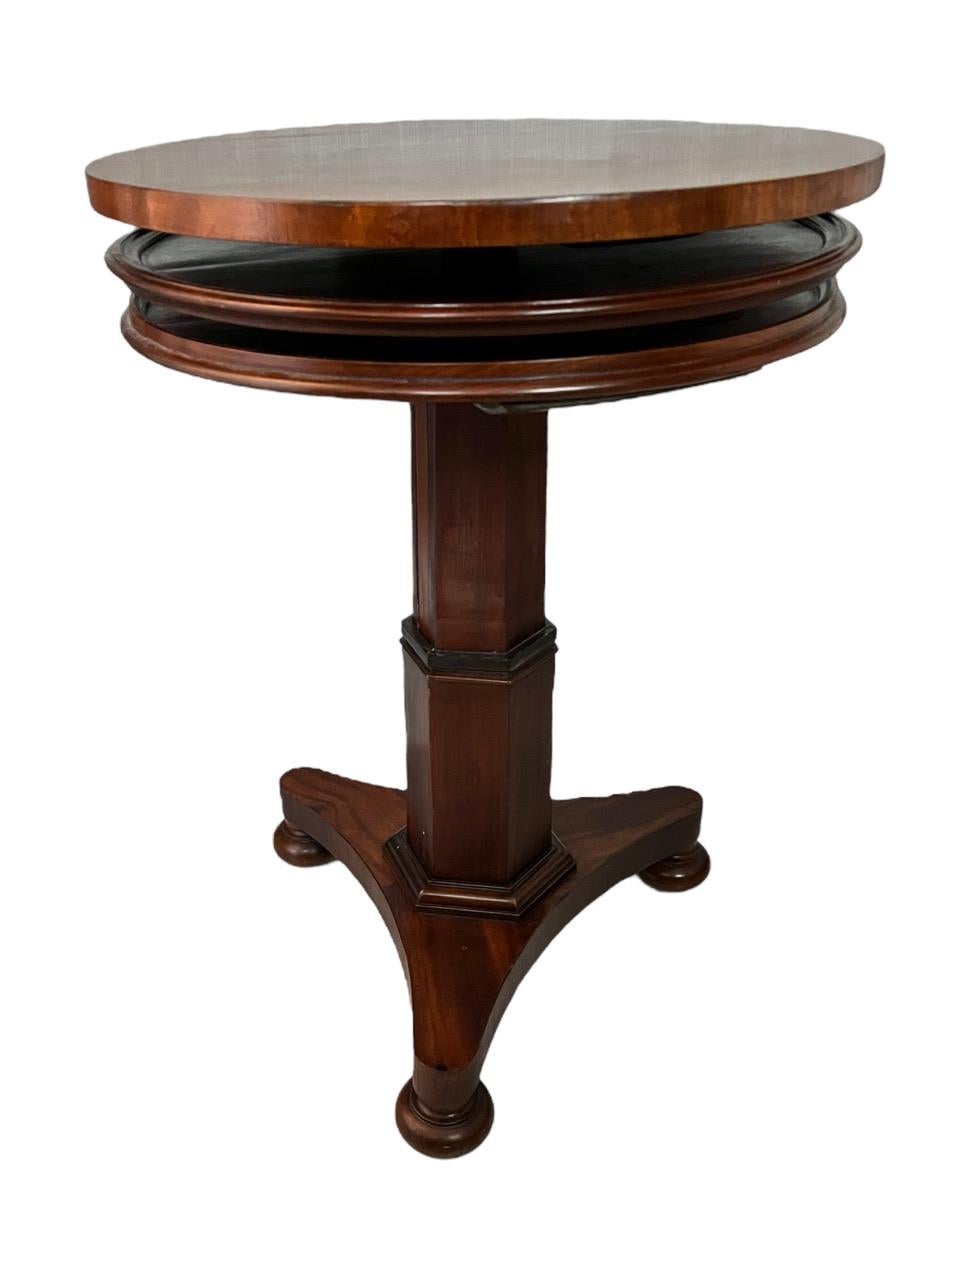 Englischer, ausziehbarer, runder, dreistöckiger Dumbwaiter-Tisch aus Mahagoni, 18. Jahrhundert (Holz)